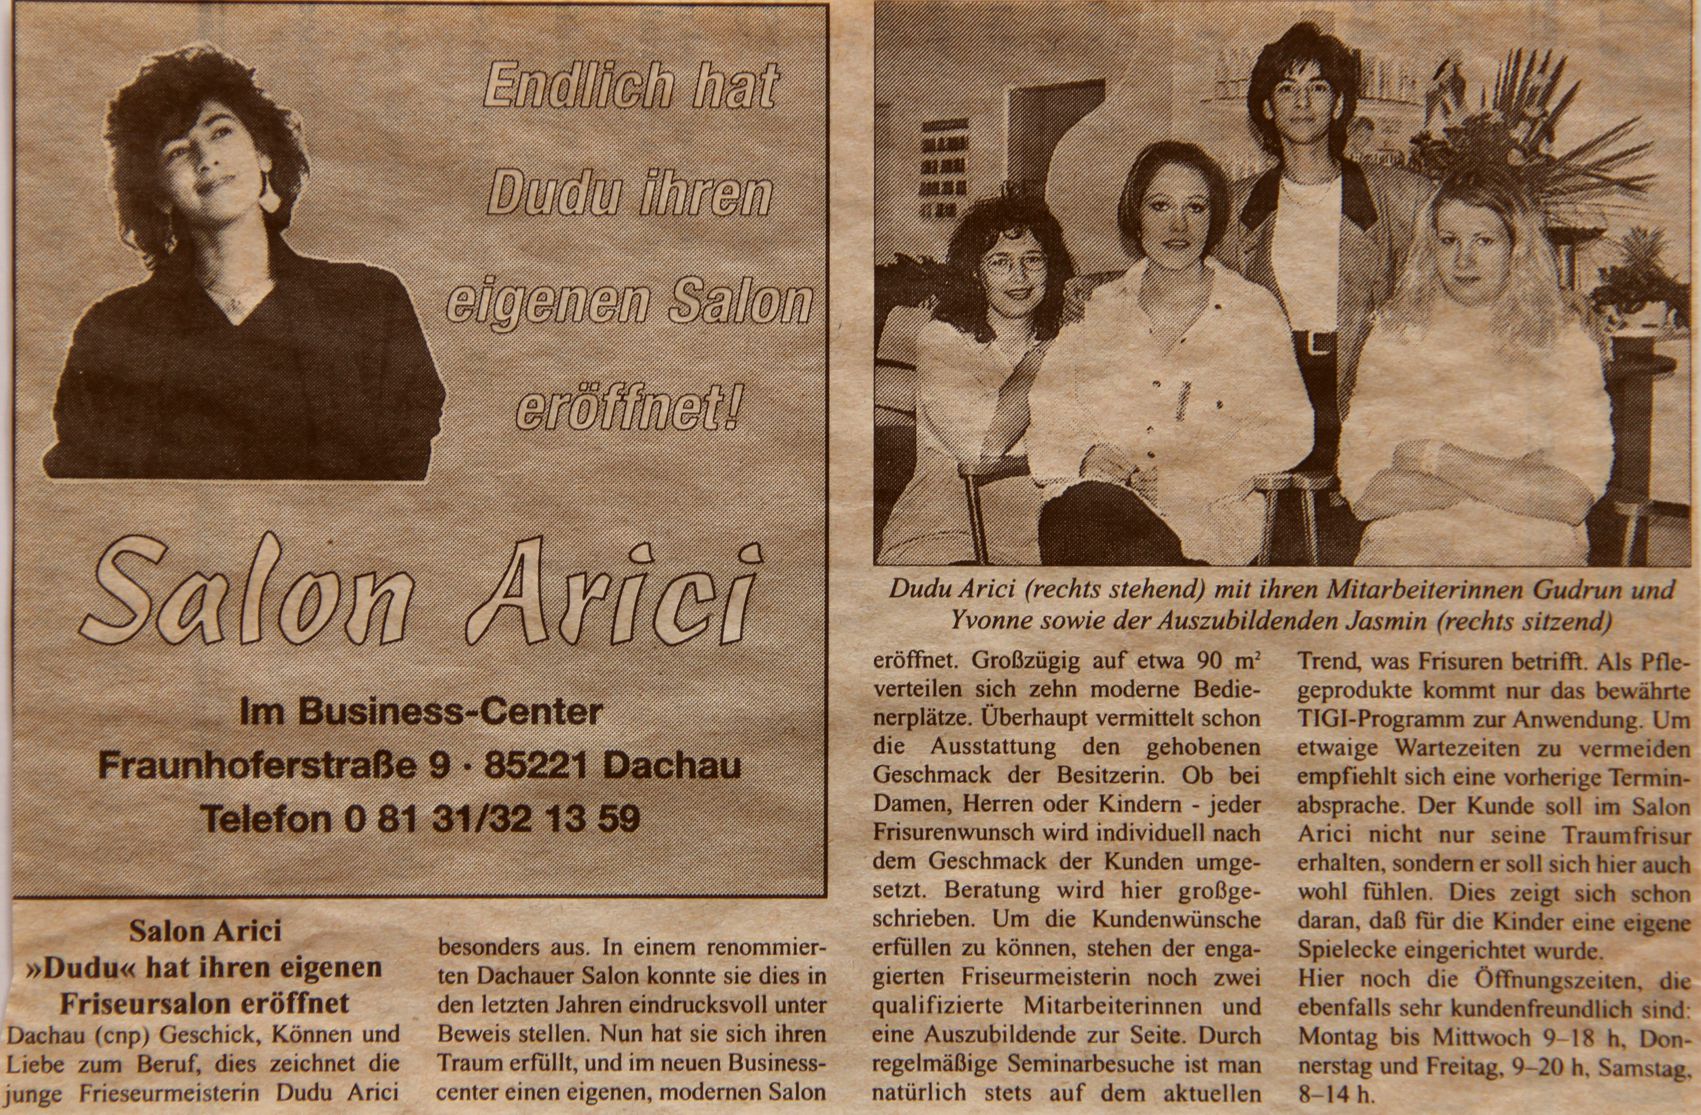 Salon Arici 1998